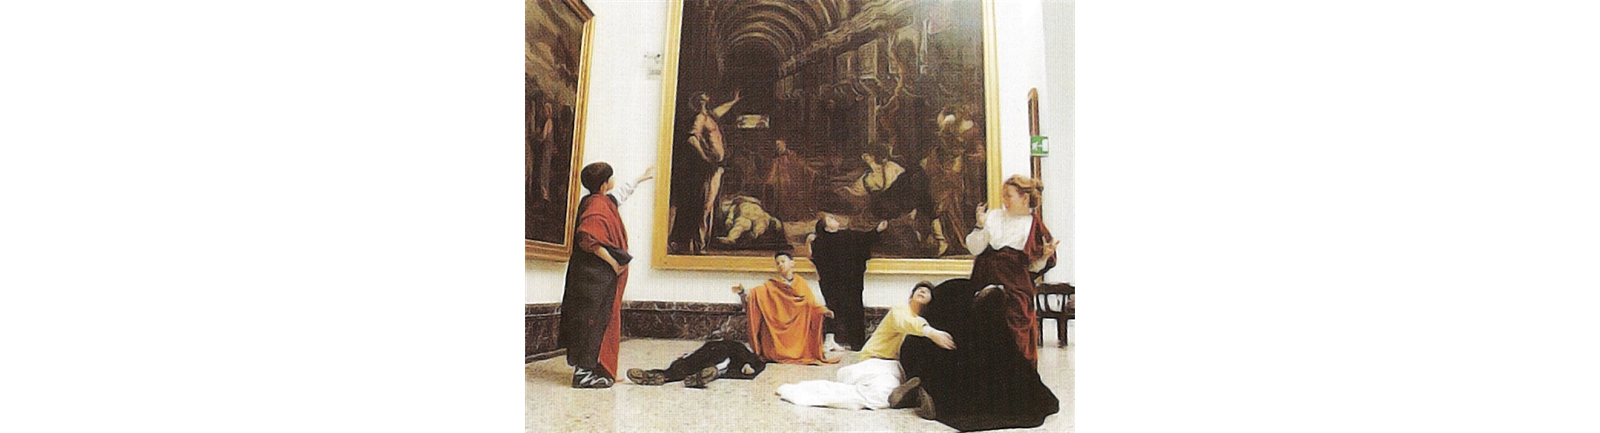 In Pinacoteca a Brera, Milano,  animazione, Tintoretto